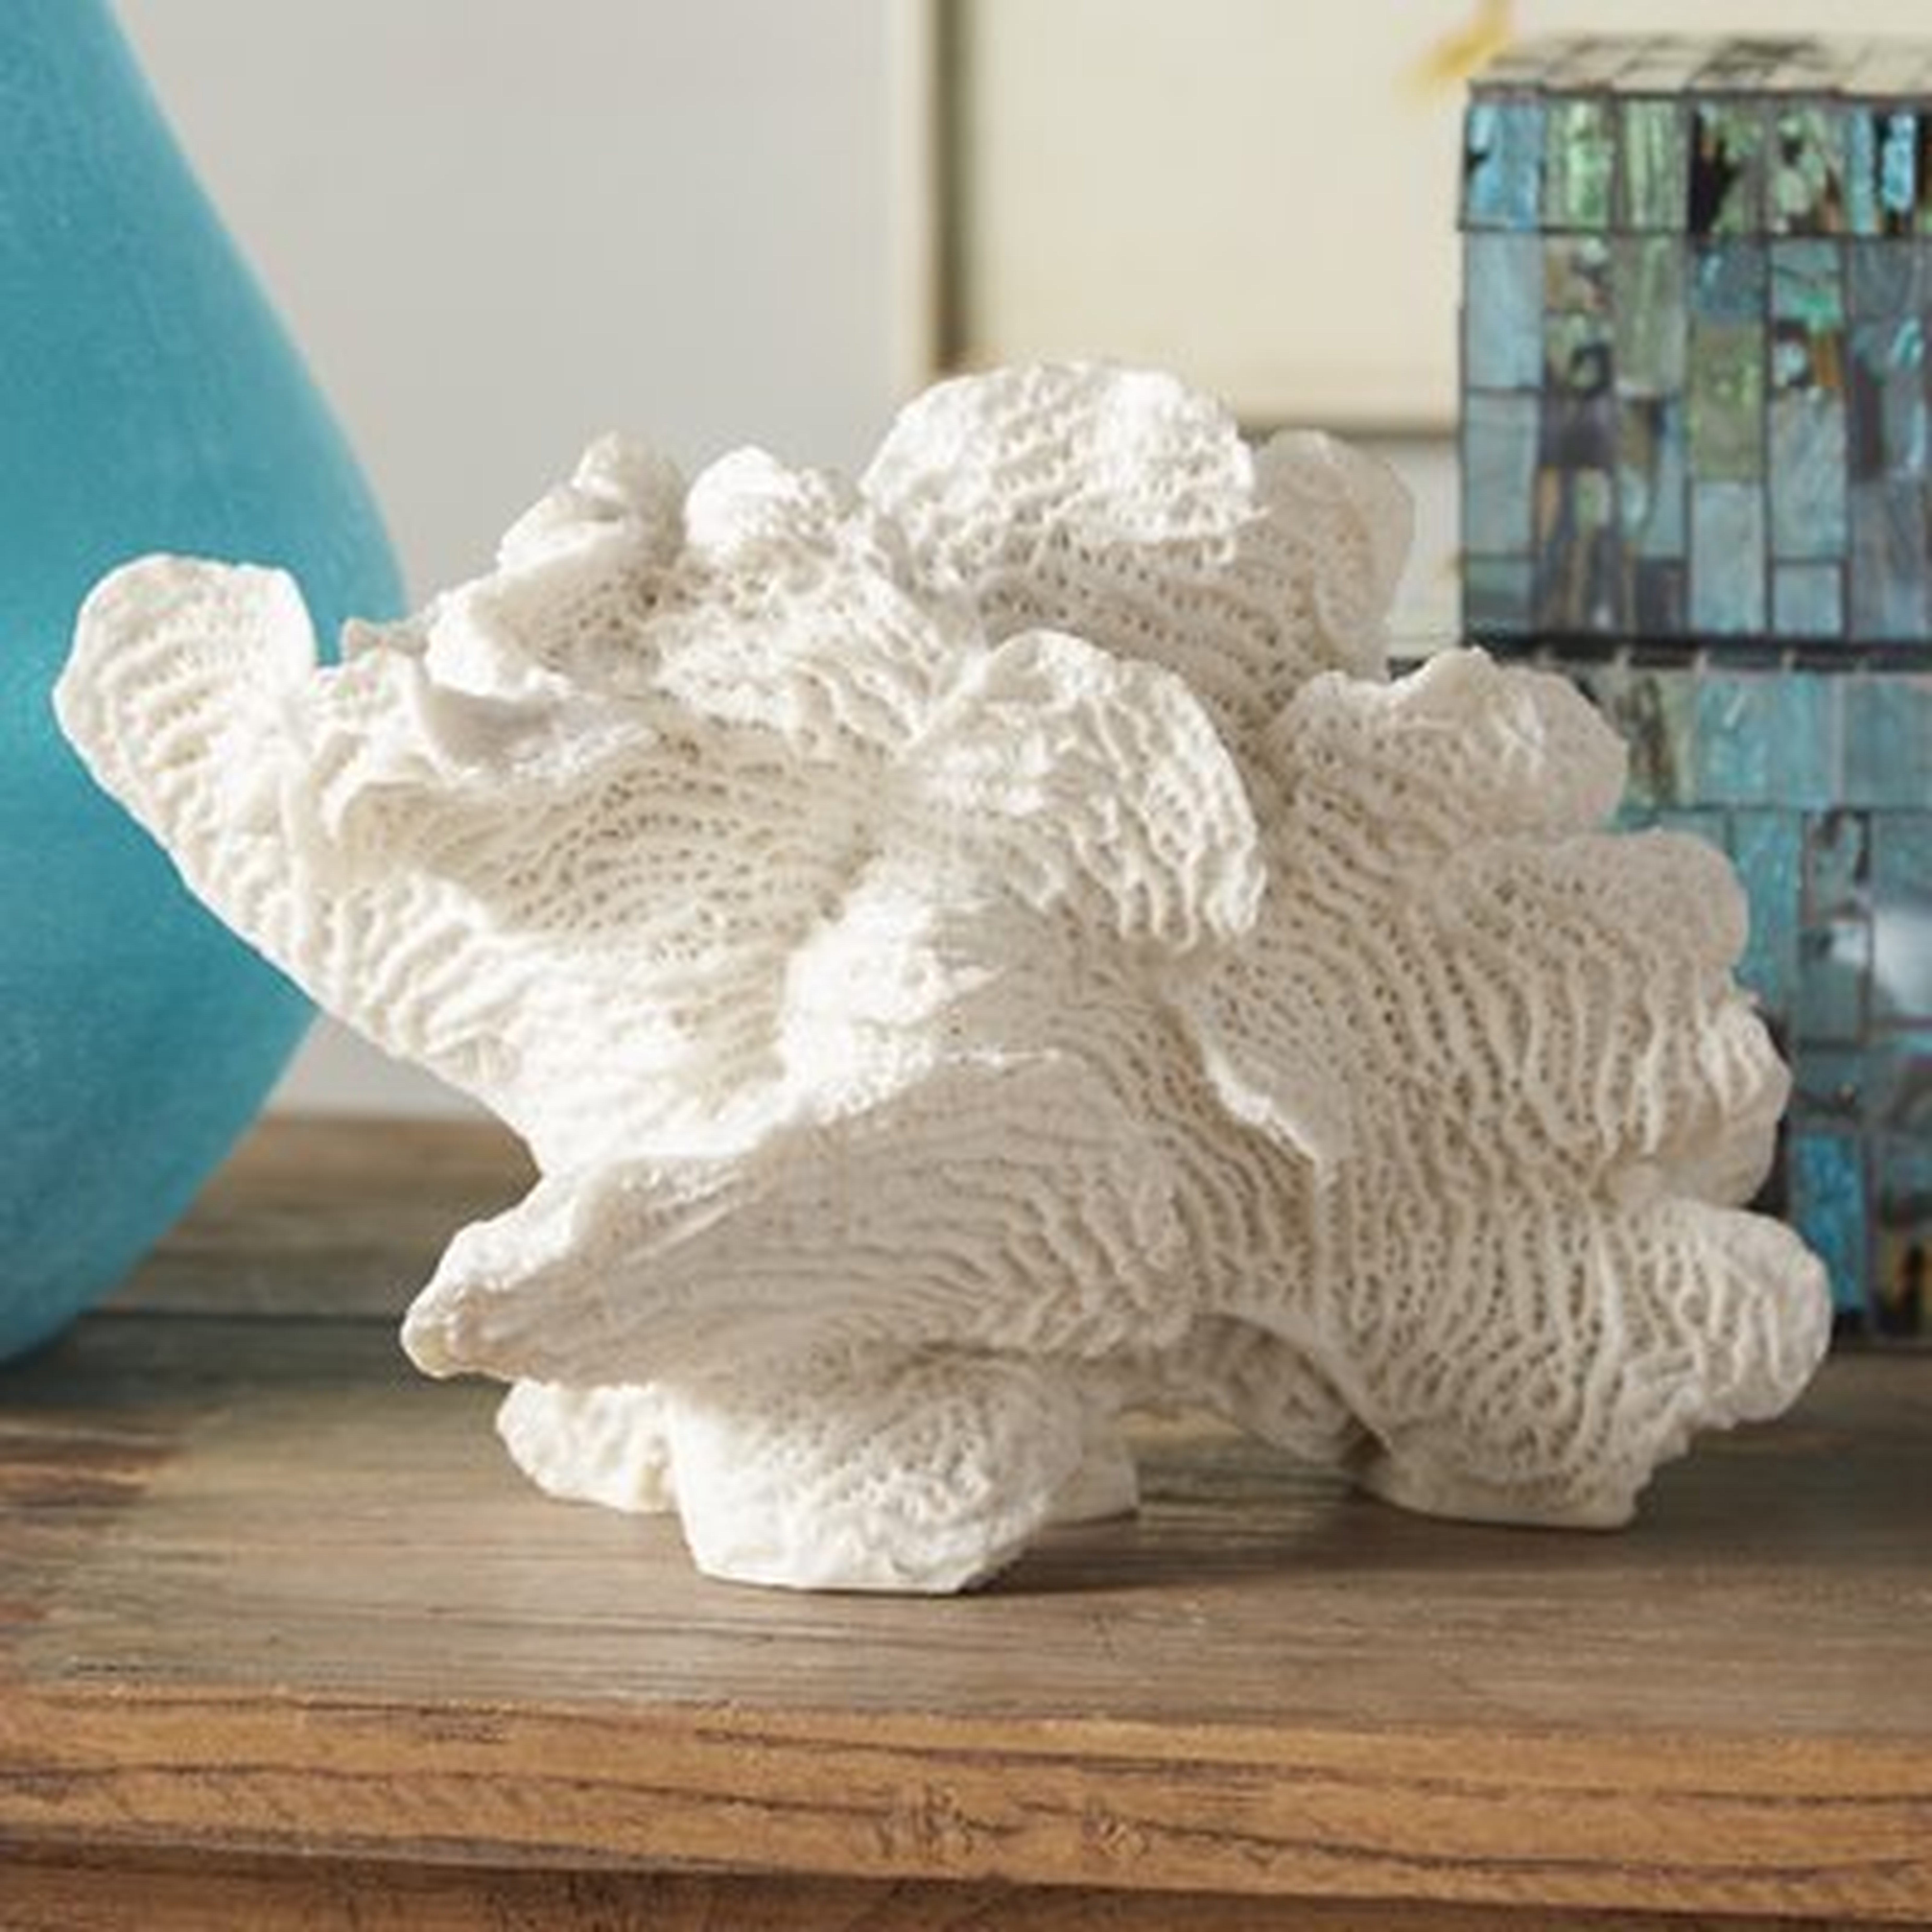 Decorative Palancar Coral Table Décor Figurine - Wayfair